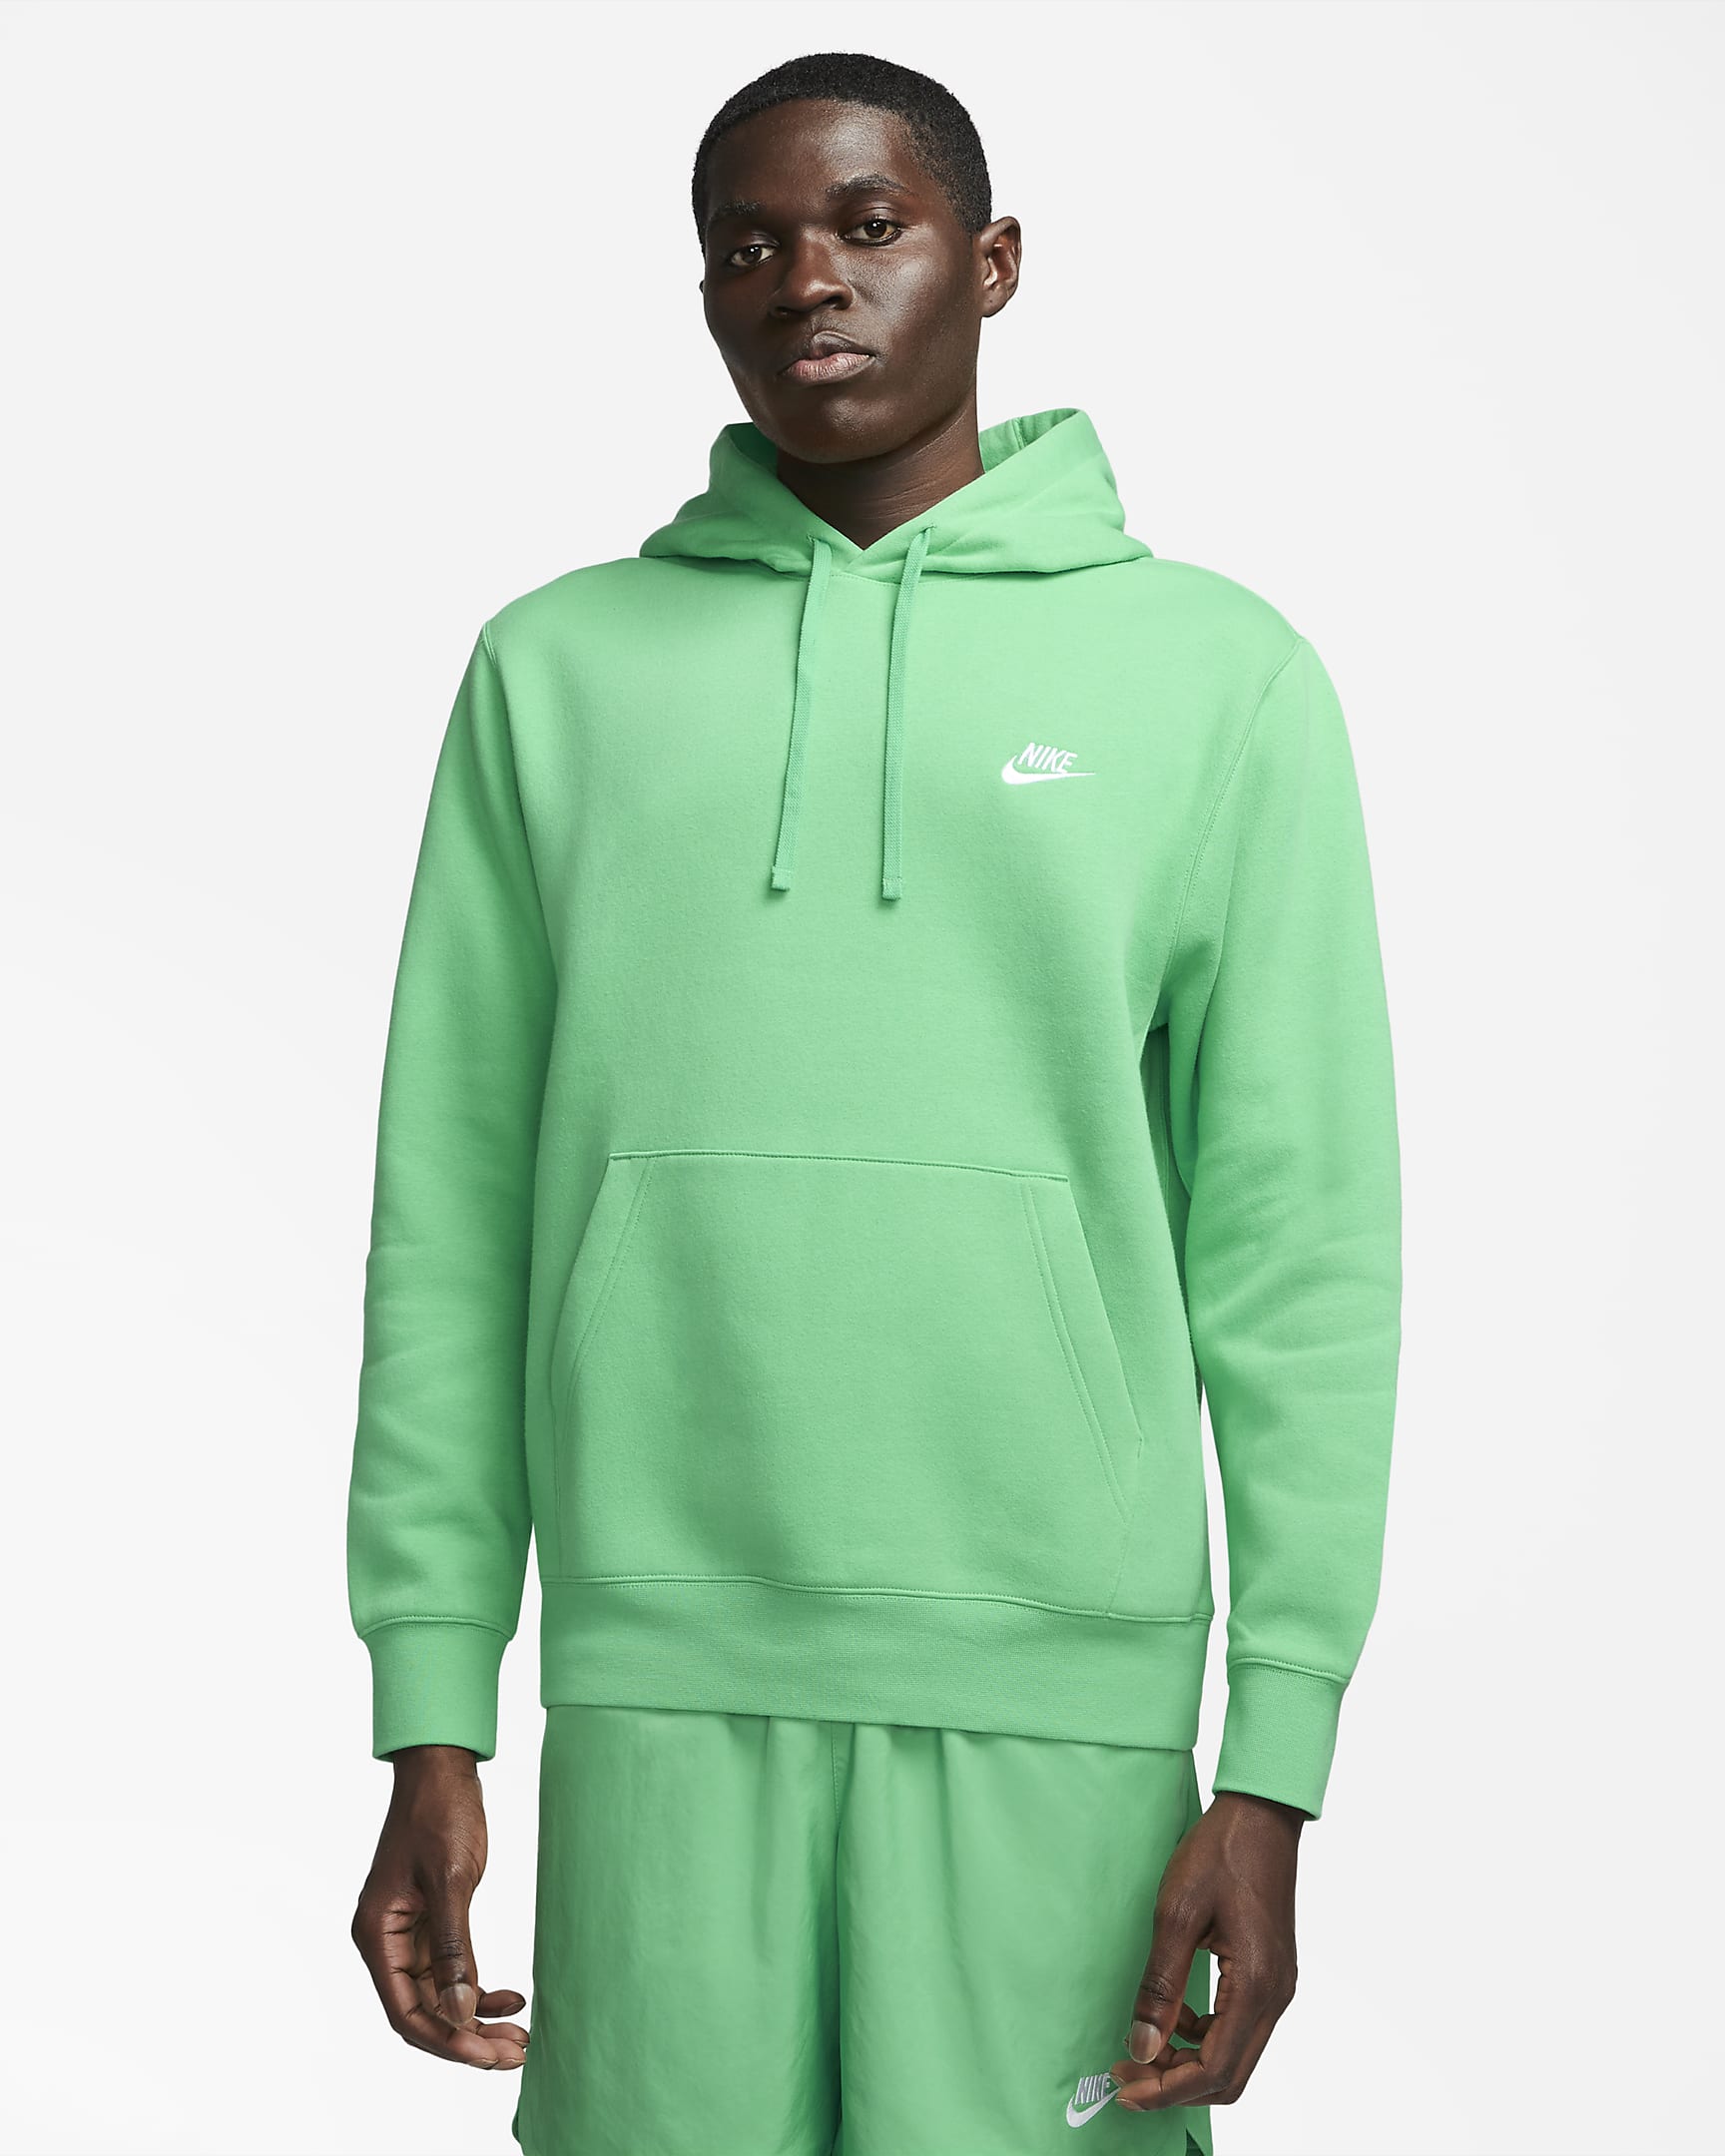 Sweat capuche Nike Sportswear Club fleece - Vert